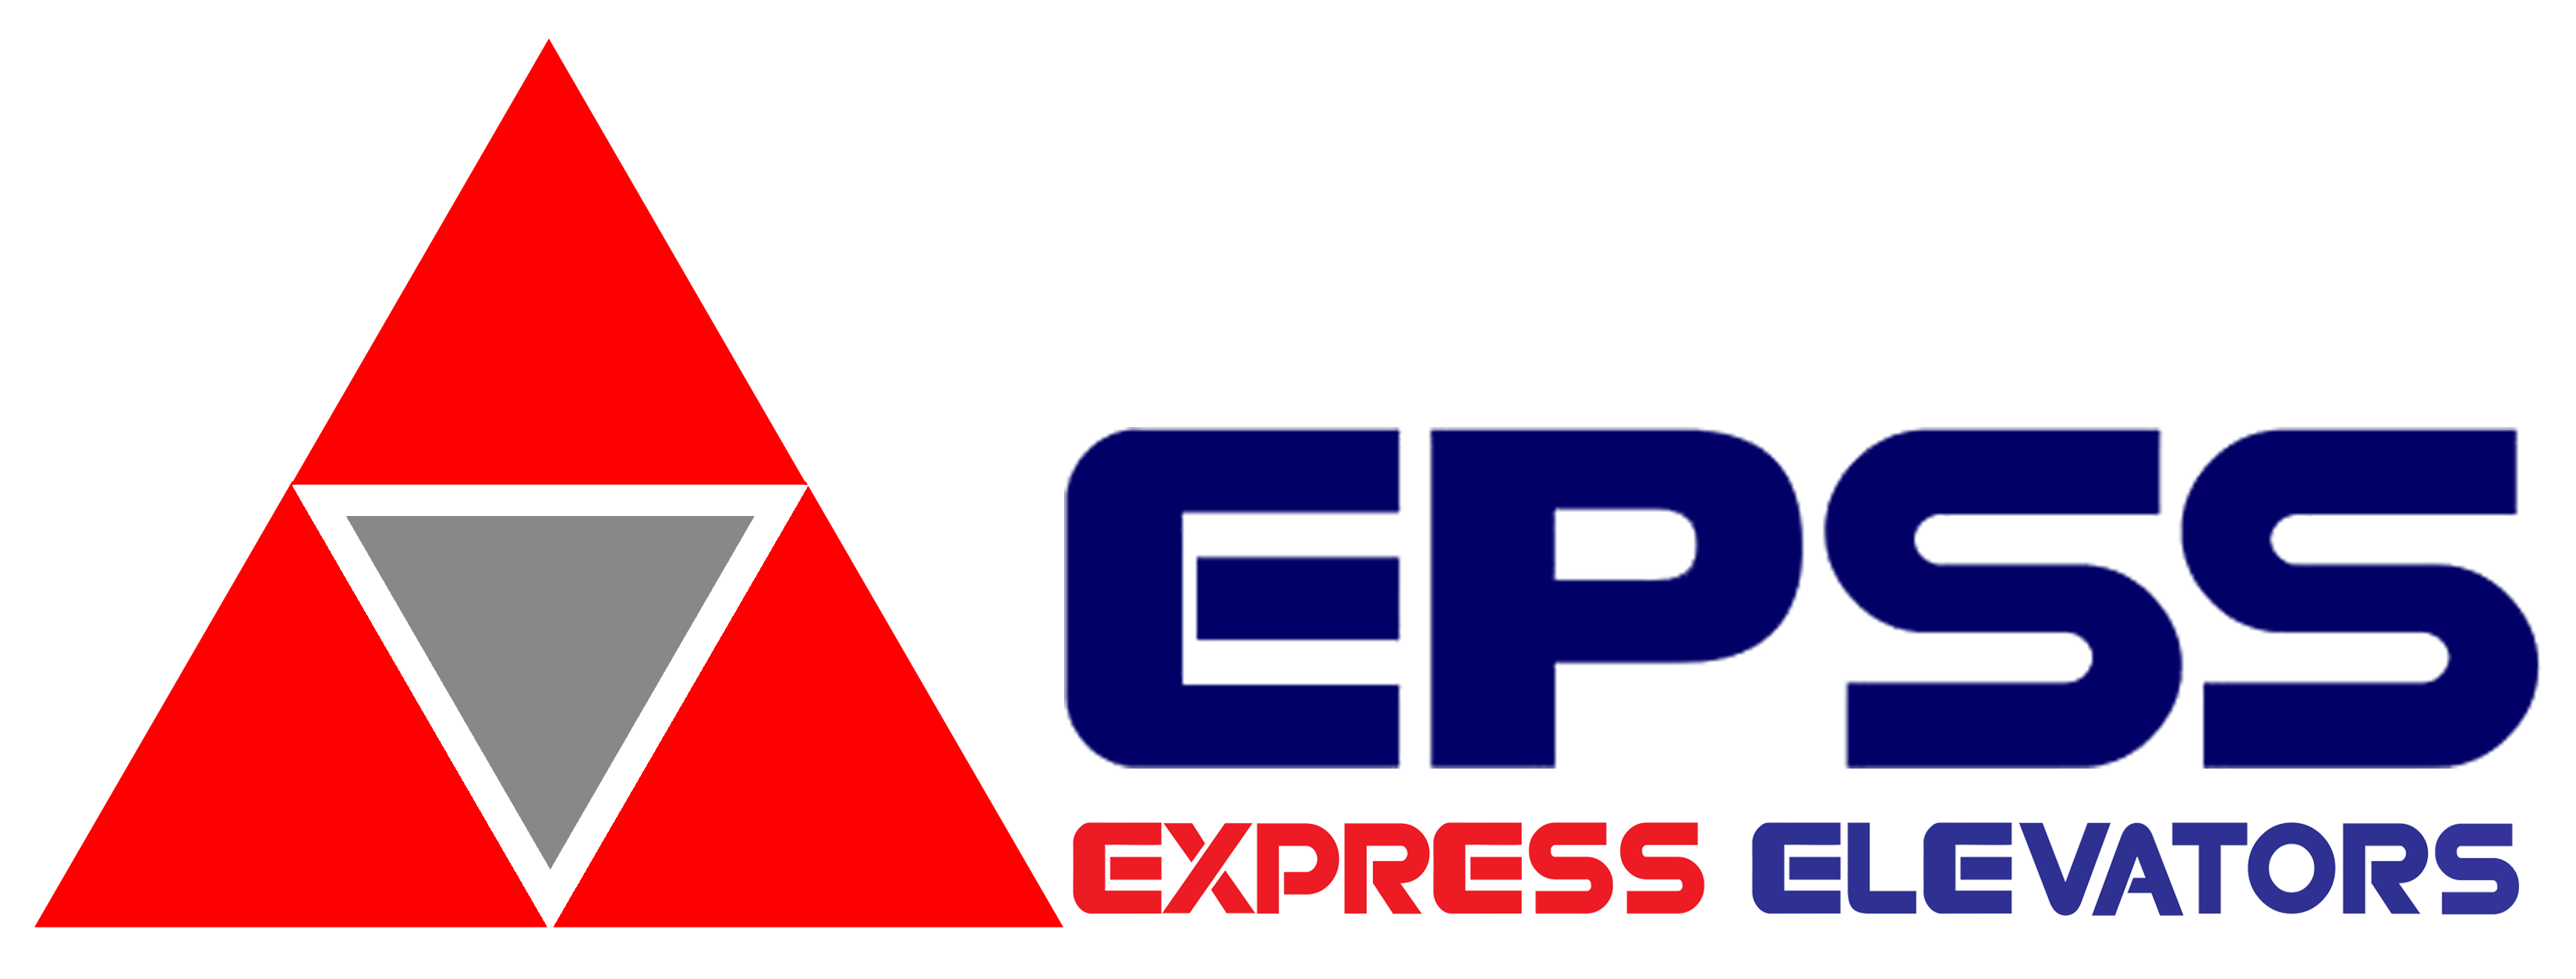 Express Elevators